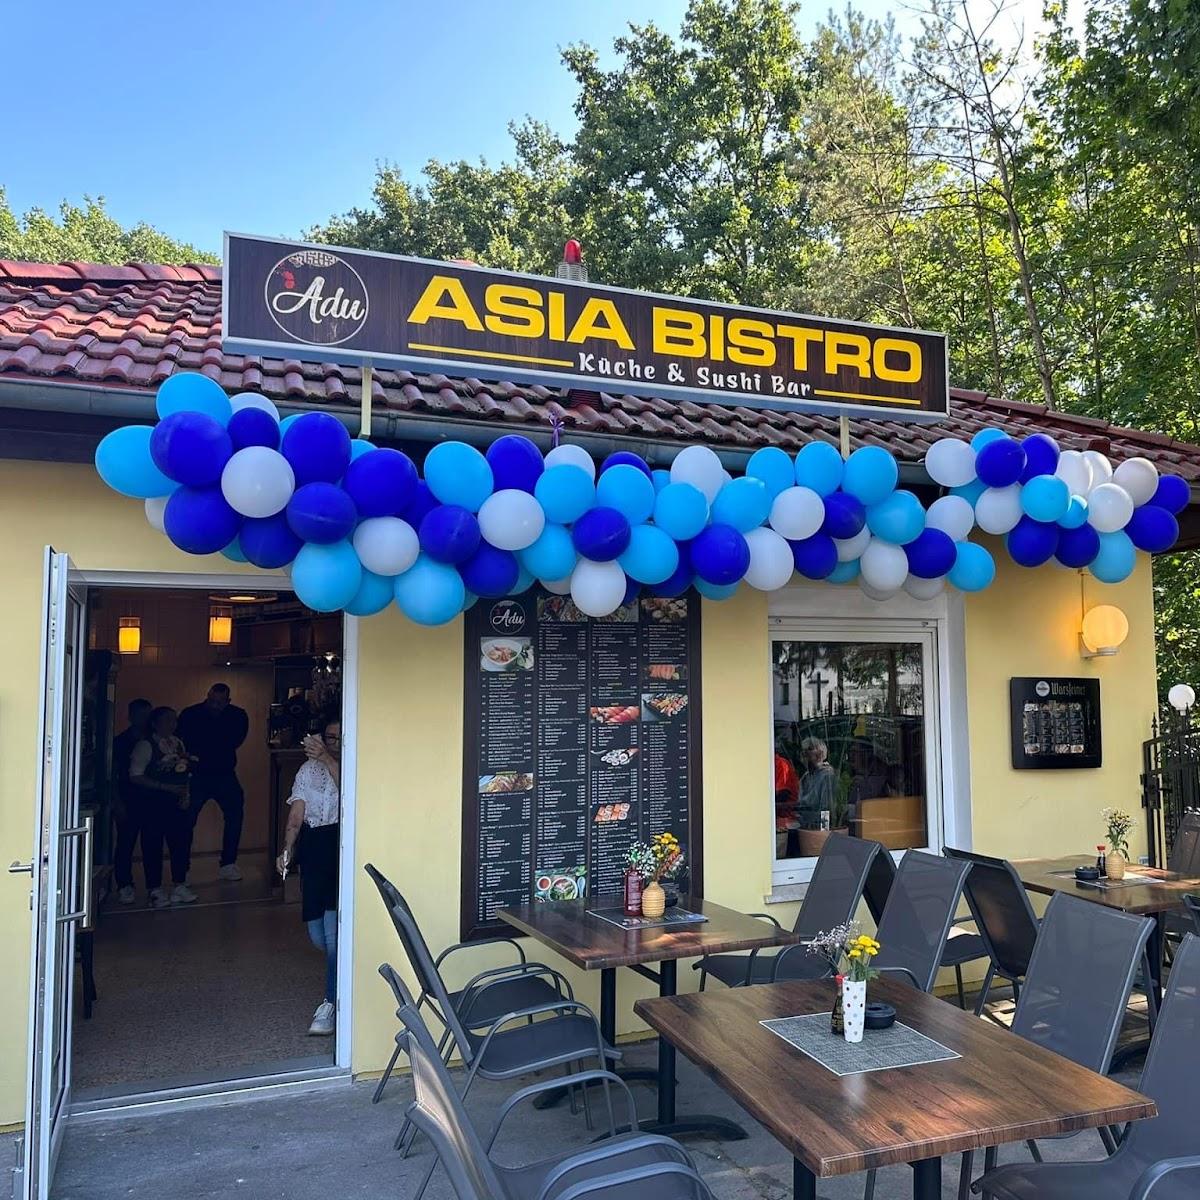 Restaurant "ADU Asia Bistro" in Königs Wusterhausen